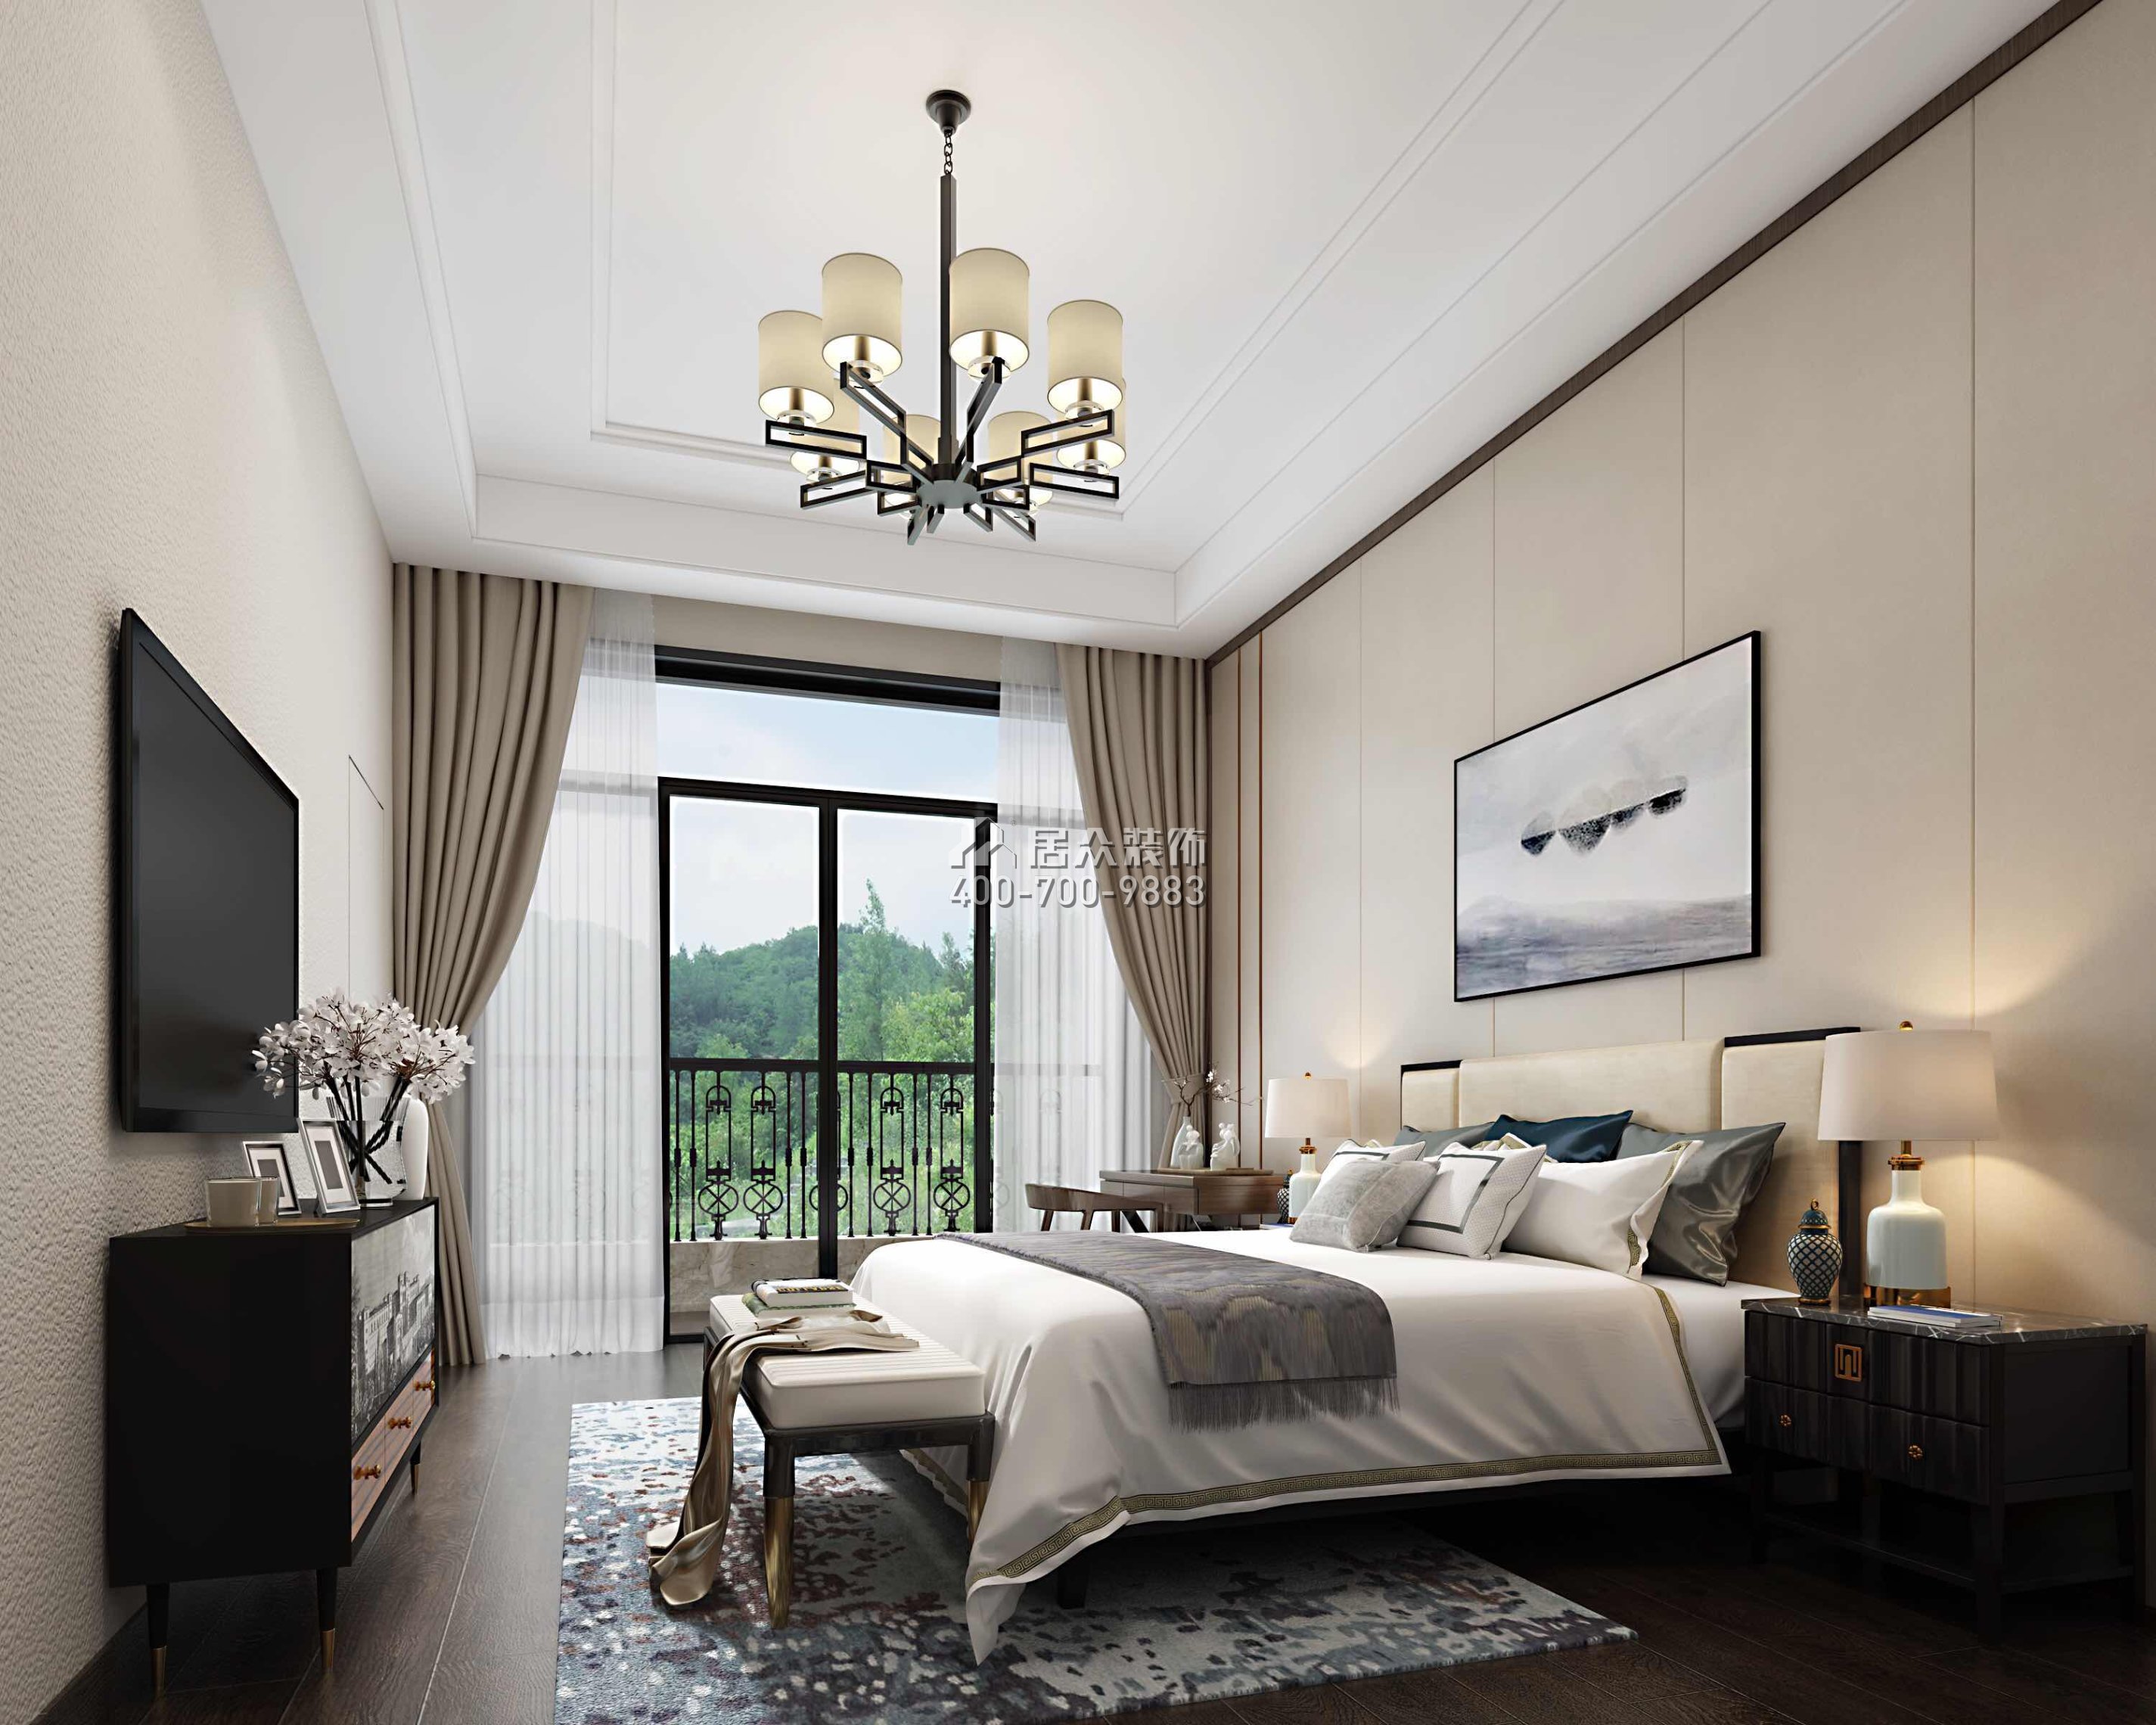 雅居乐白鹭湖300平方米中式风格平层户型卧室装修效果图